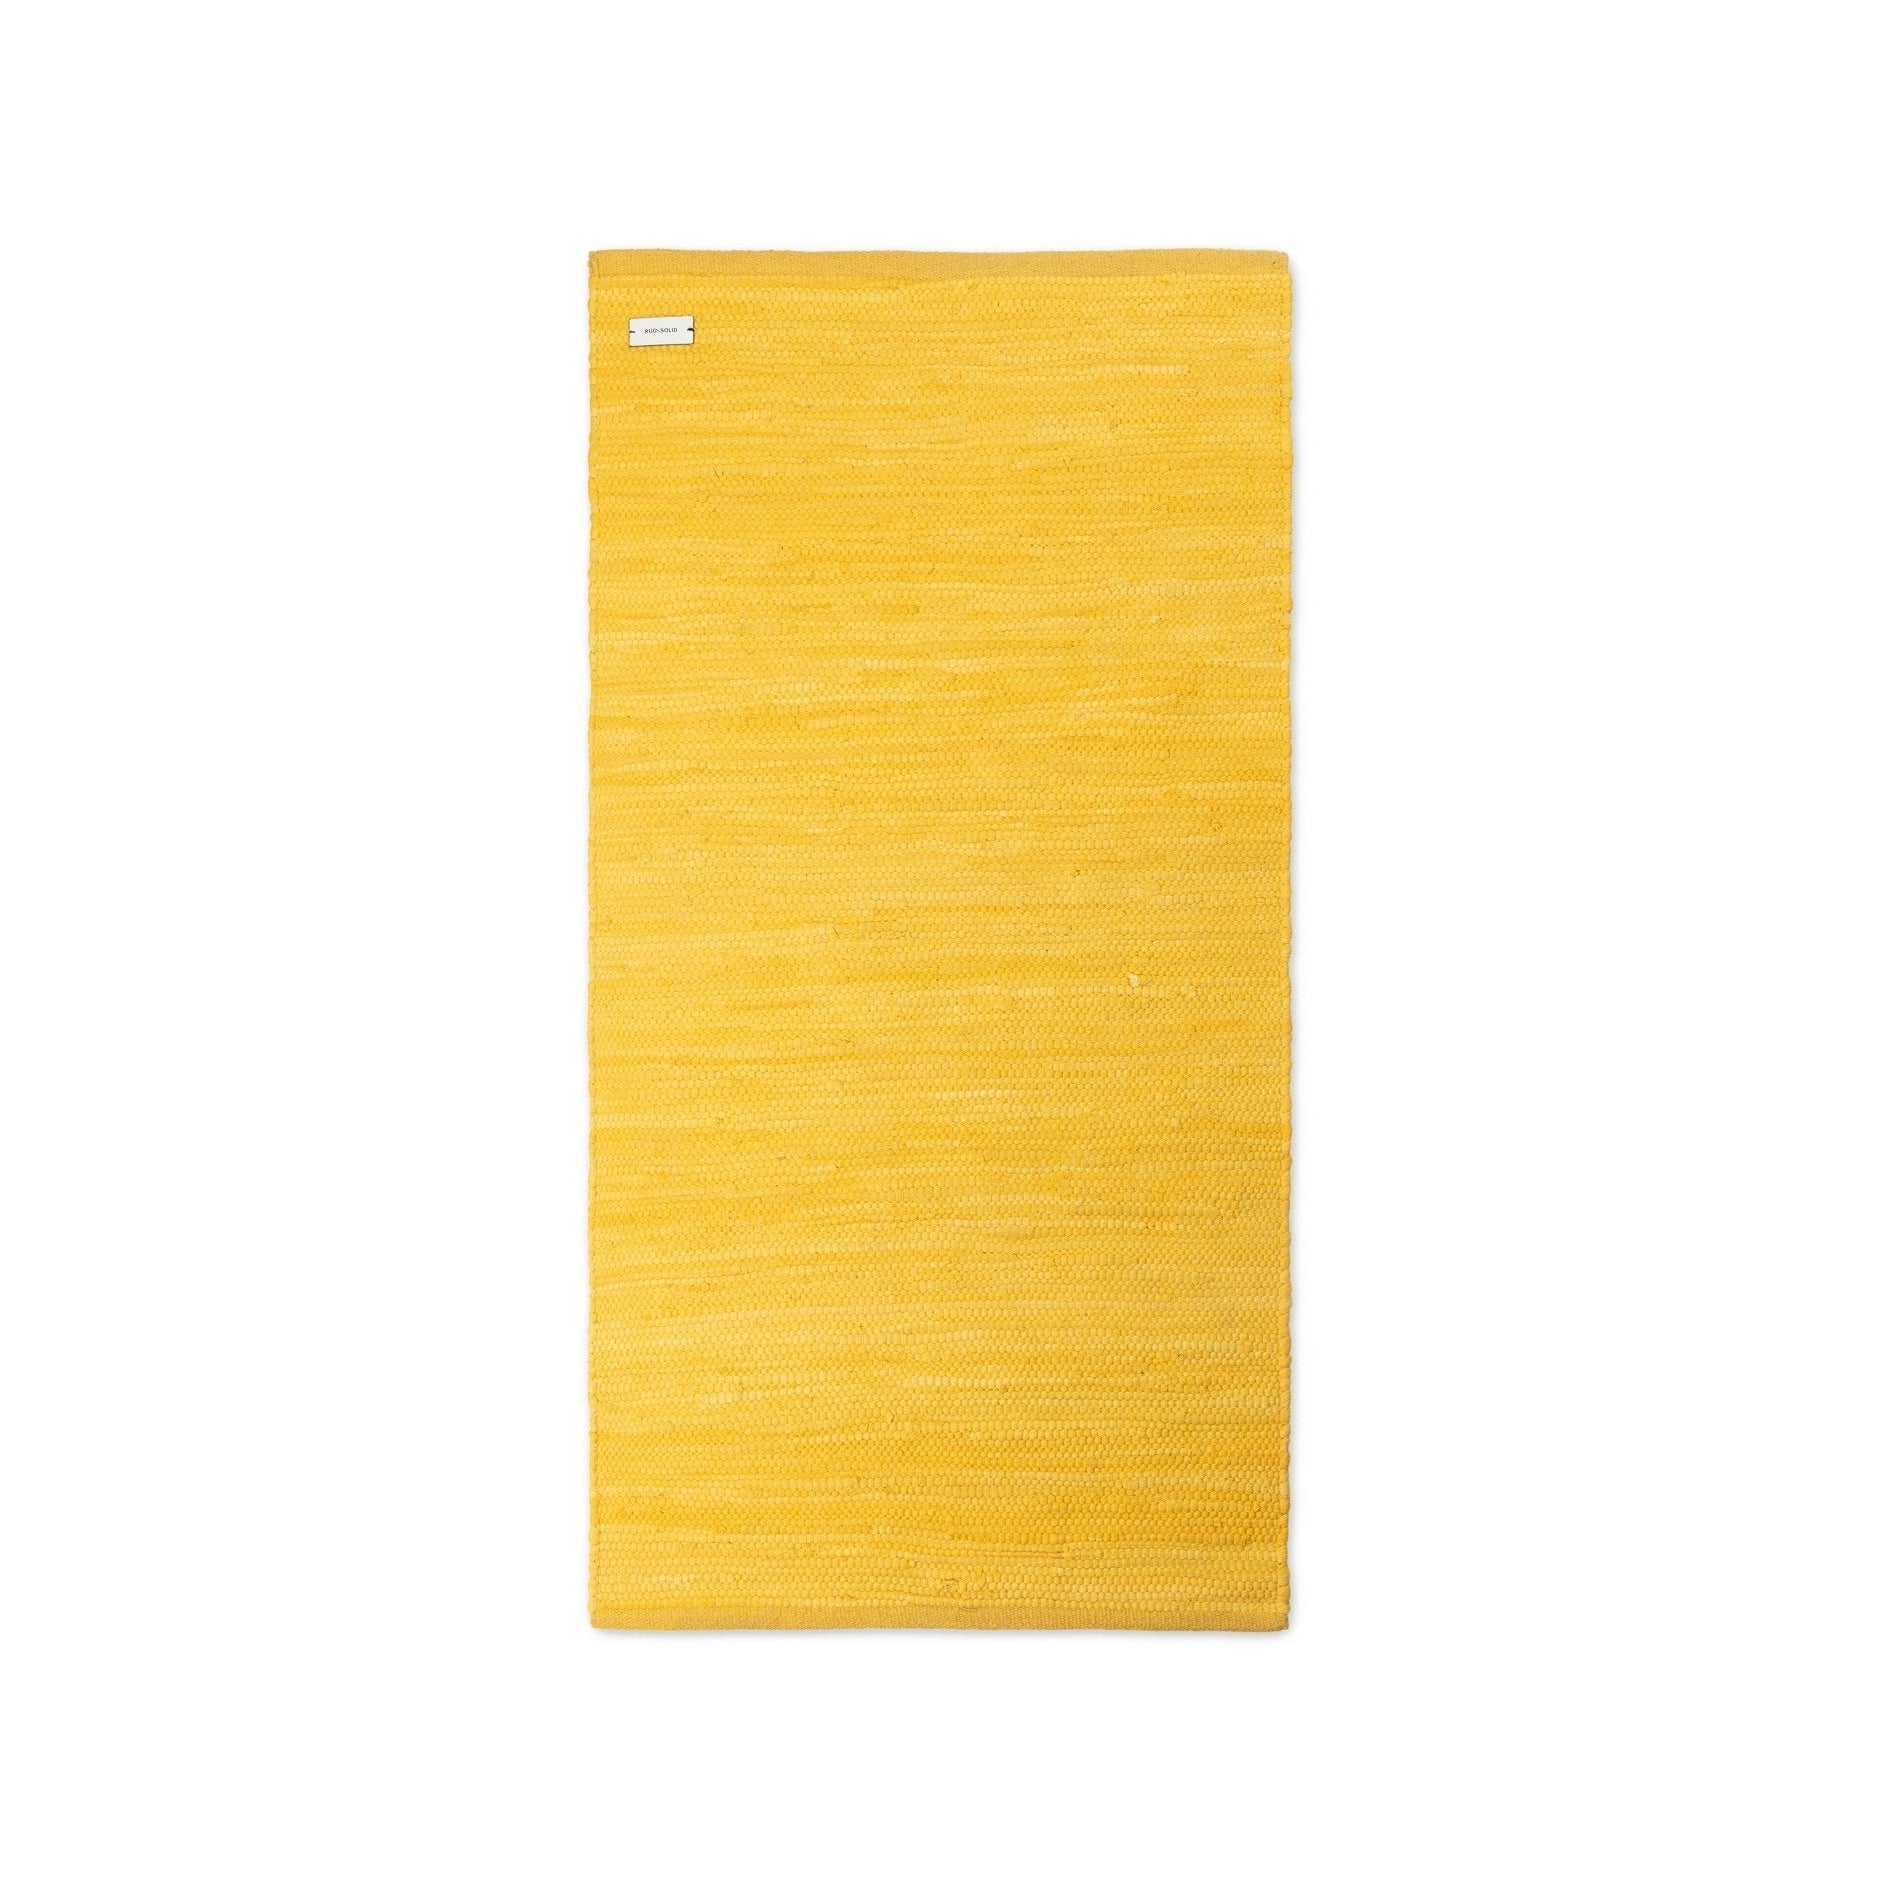 Tappeto tappeto solido tappeto impermeabile giallo, 60 x 90 cm